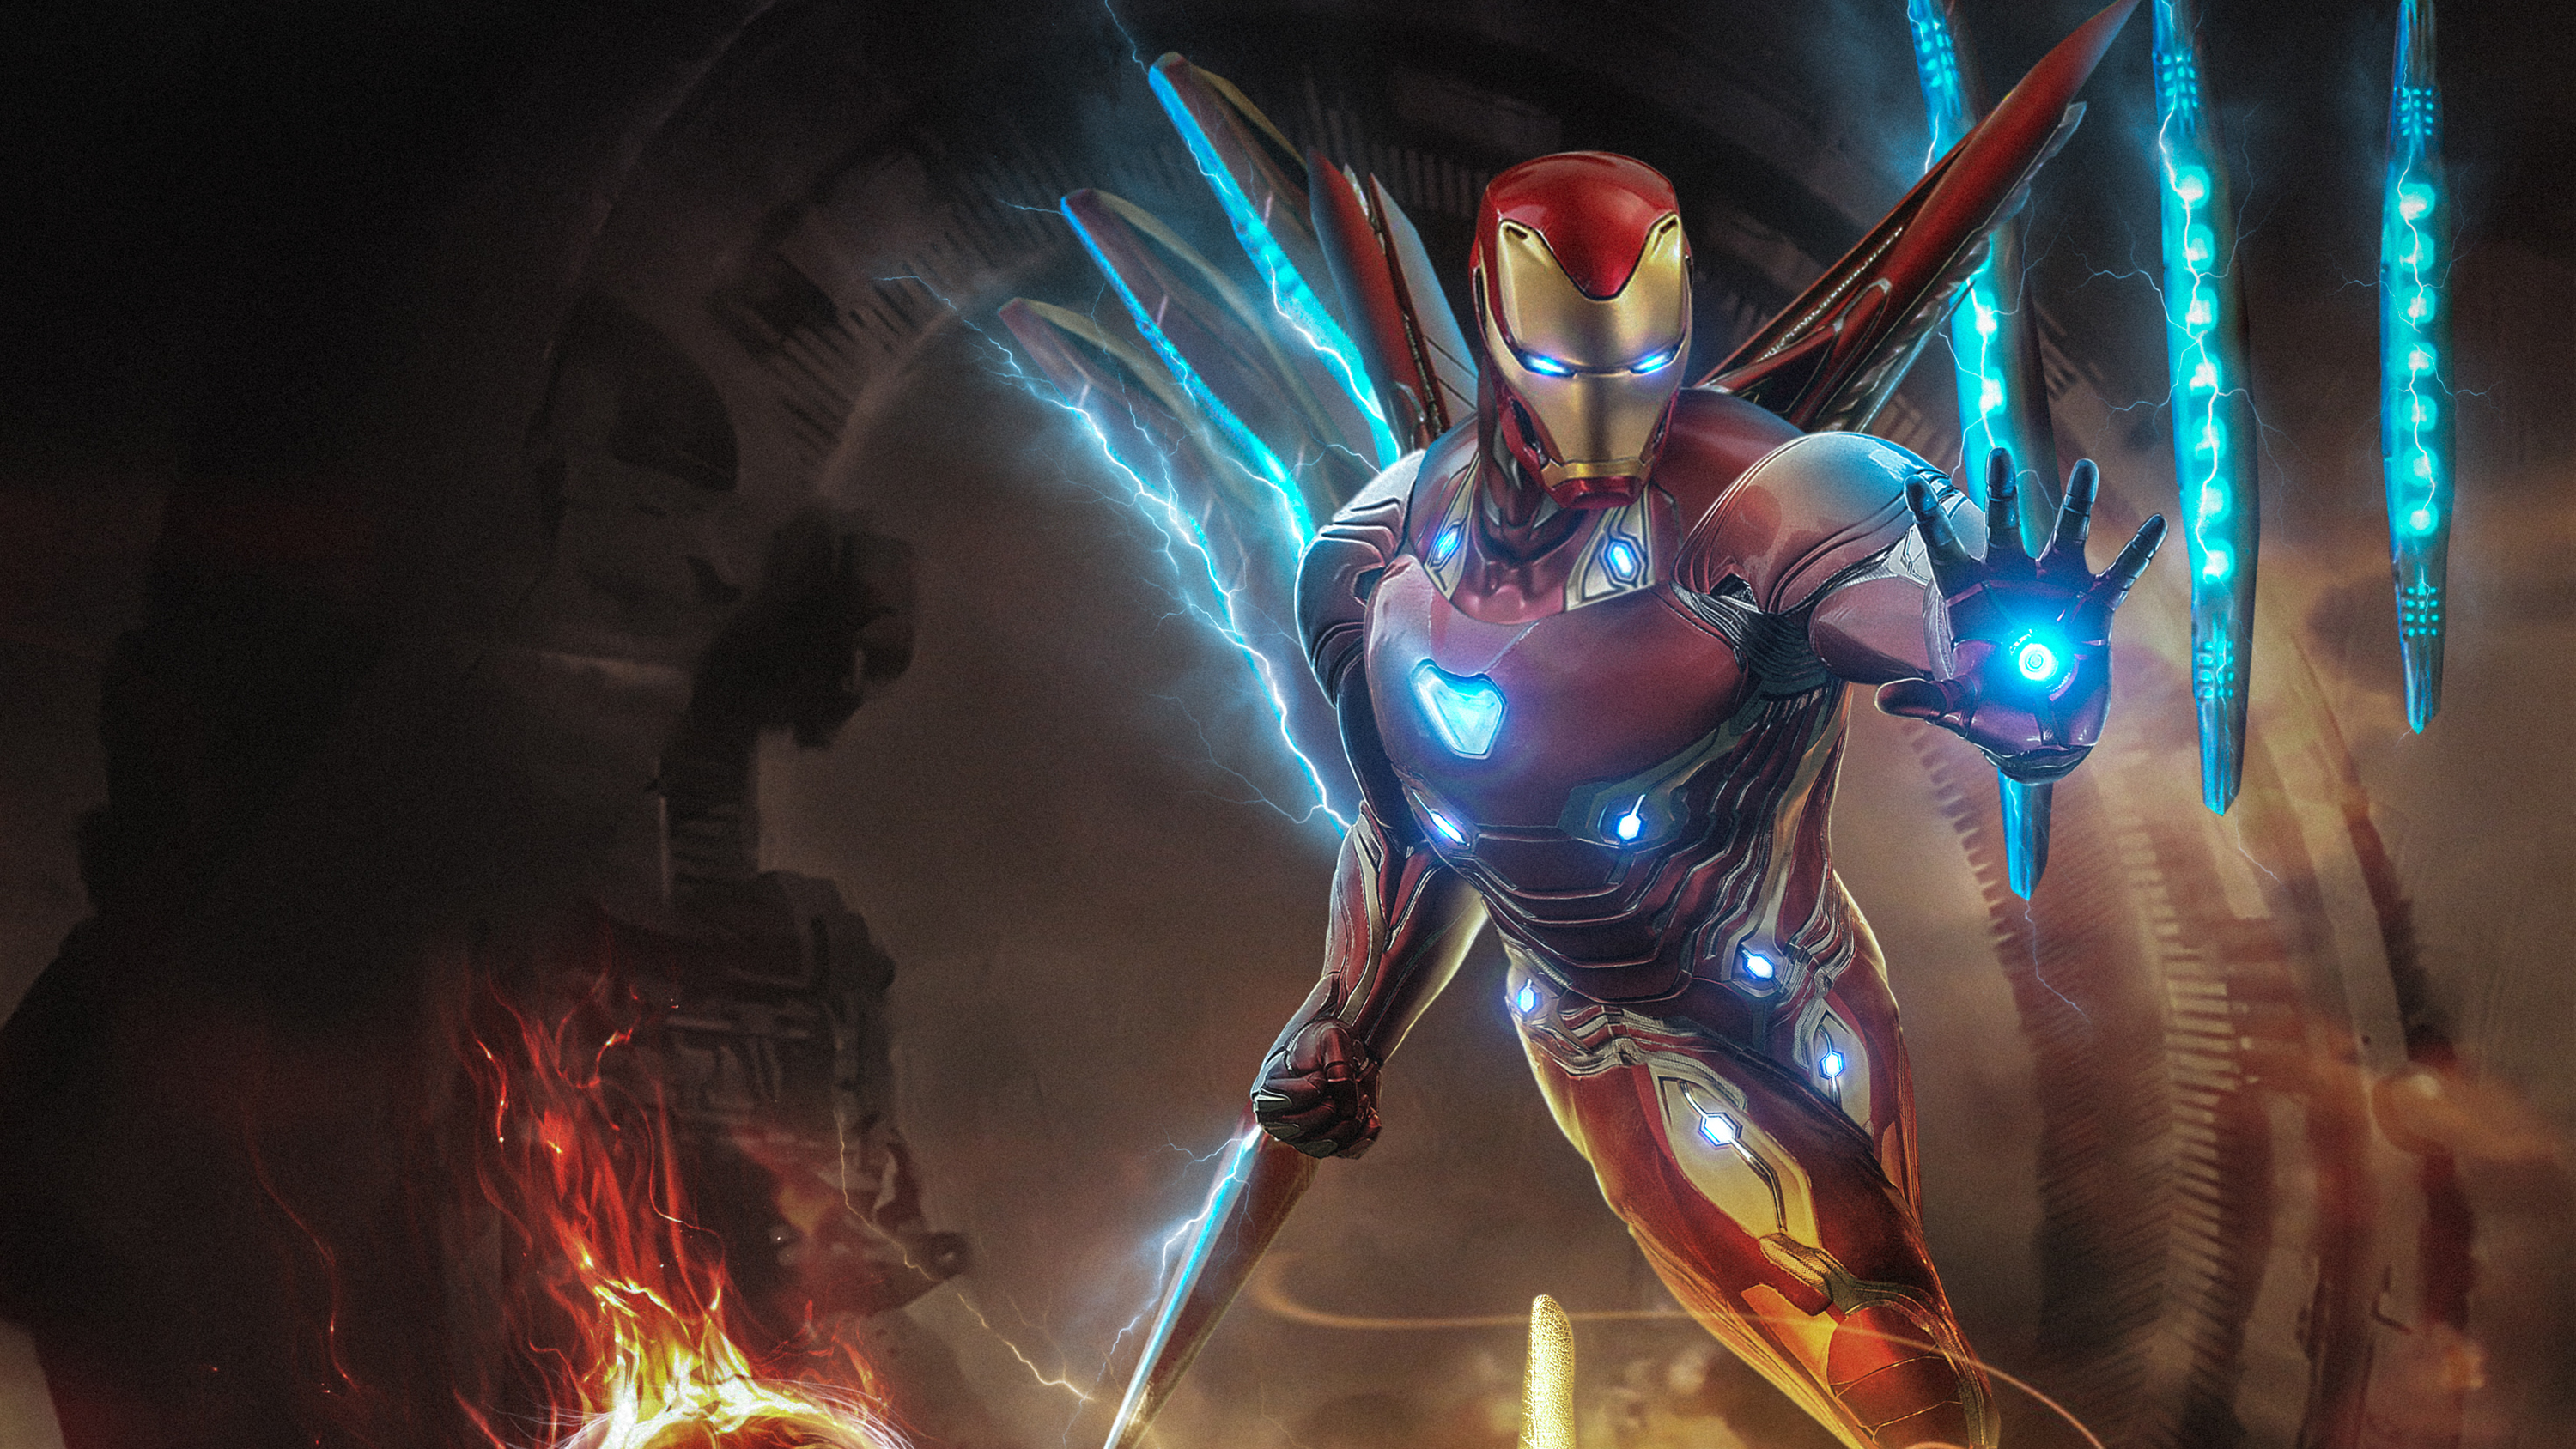 Iron Man Infinity War Armor